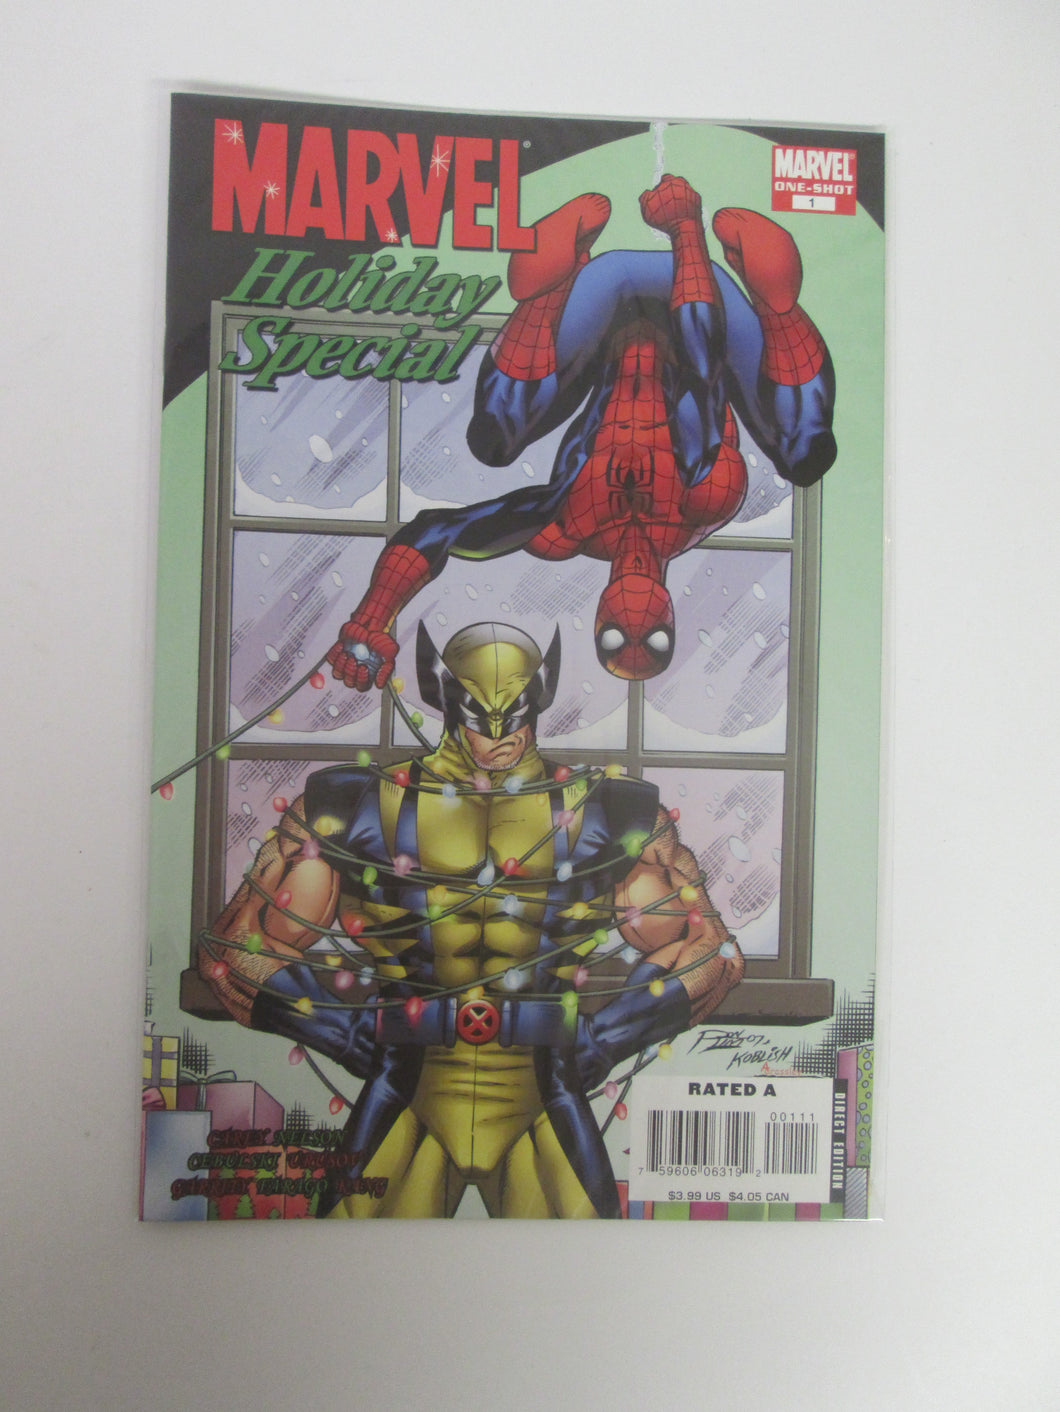 Marvel Holiday Special # 1 (Marvel)